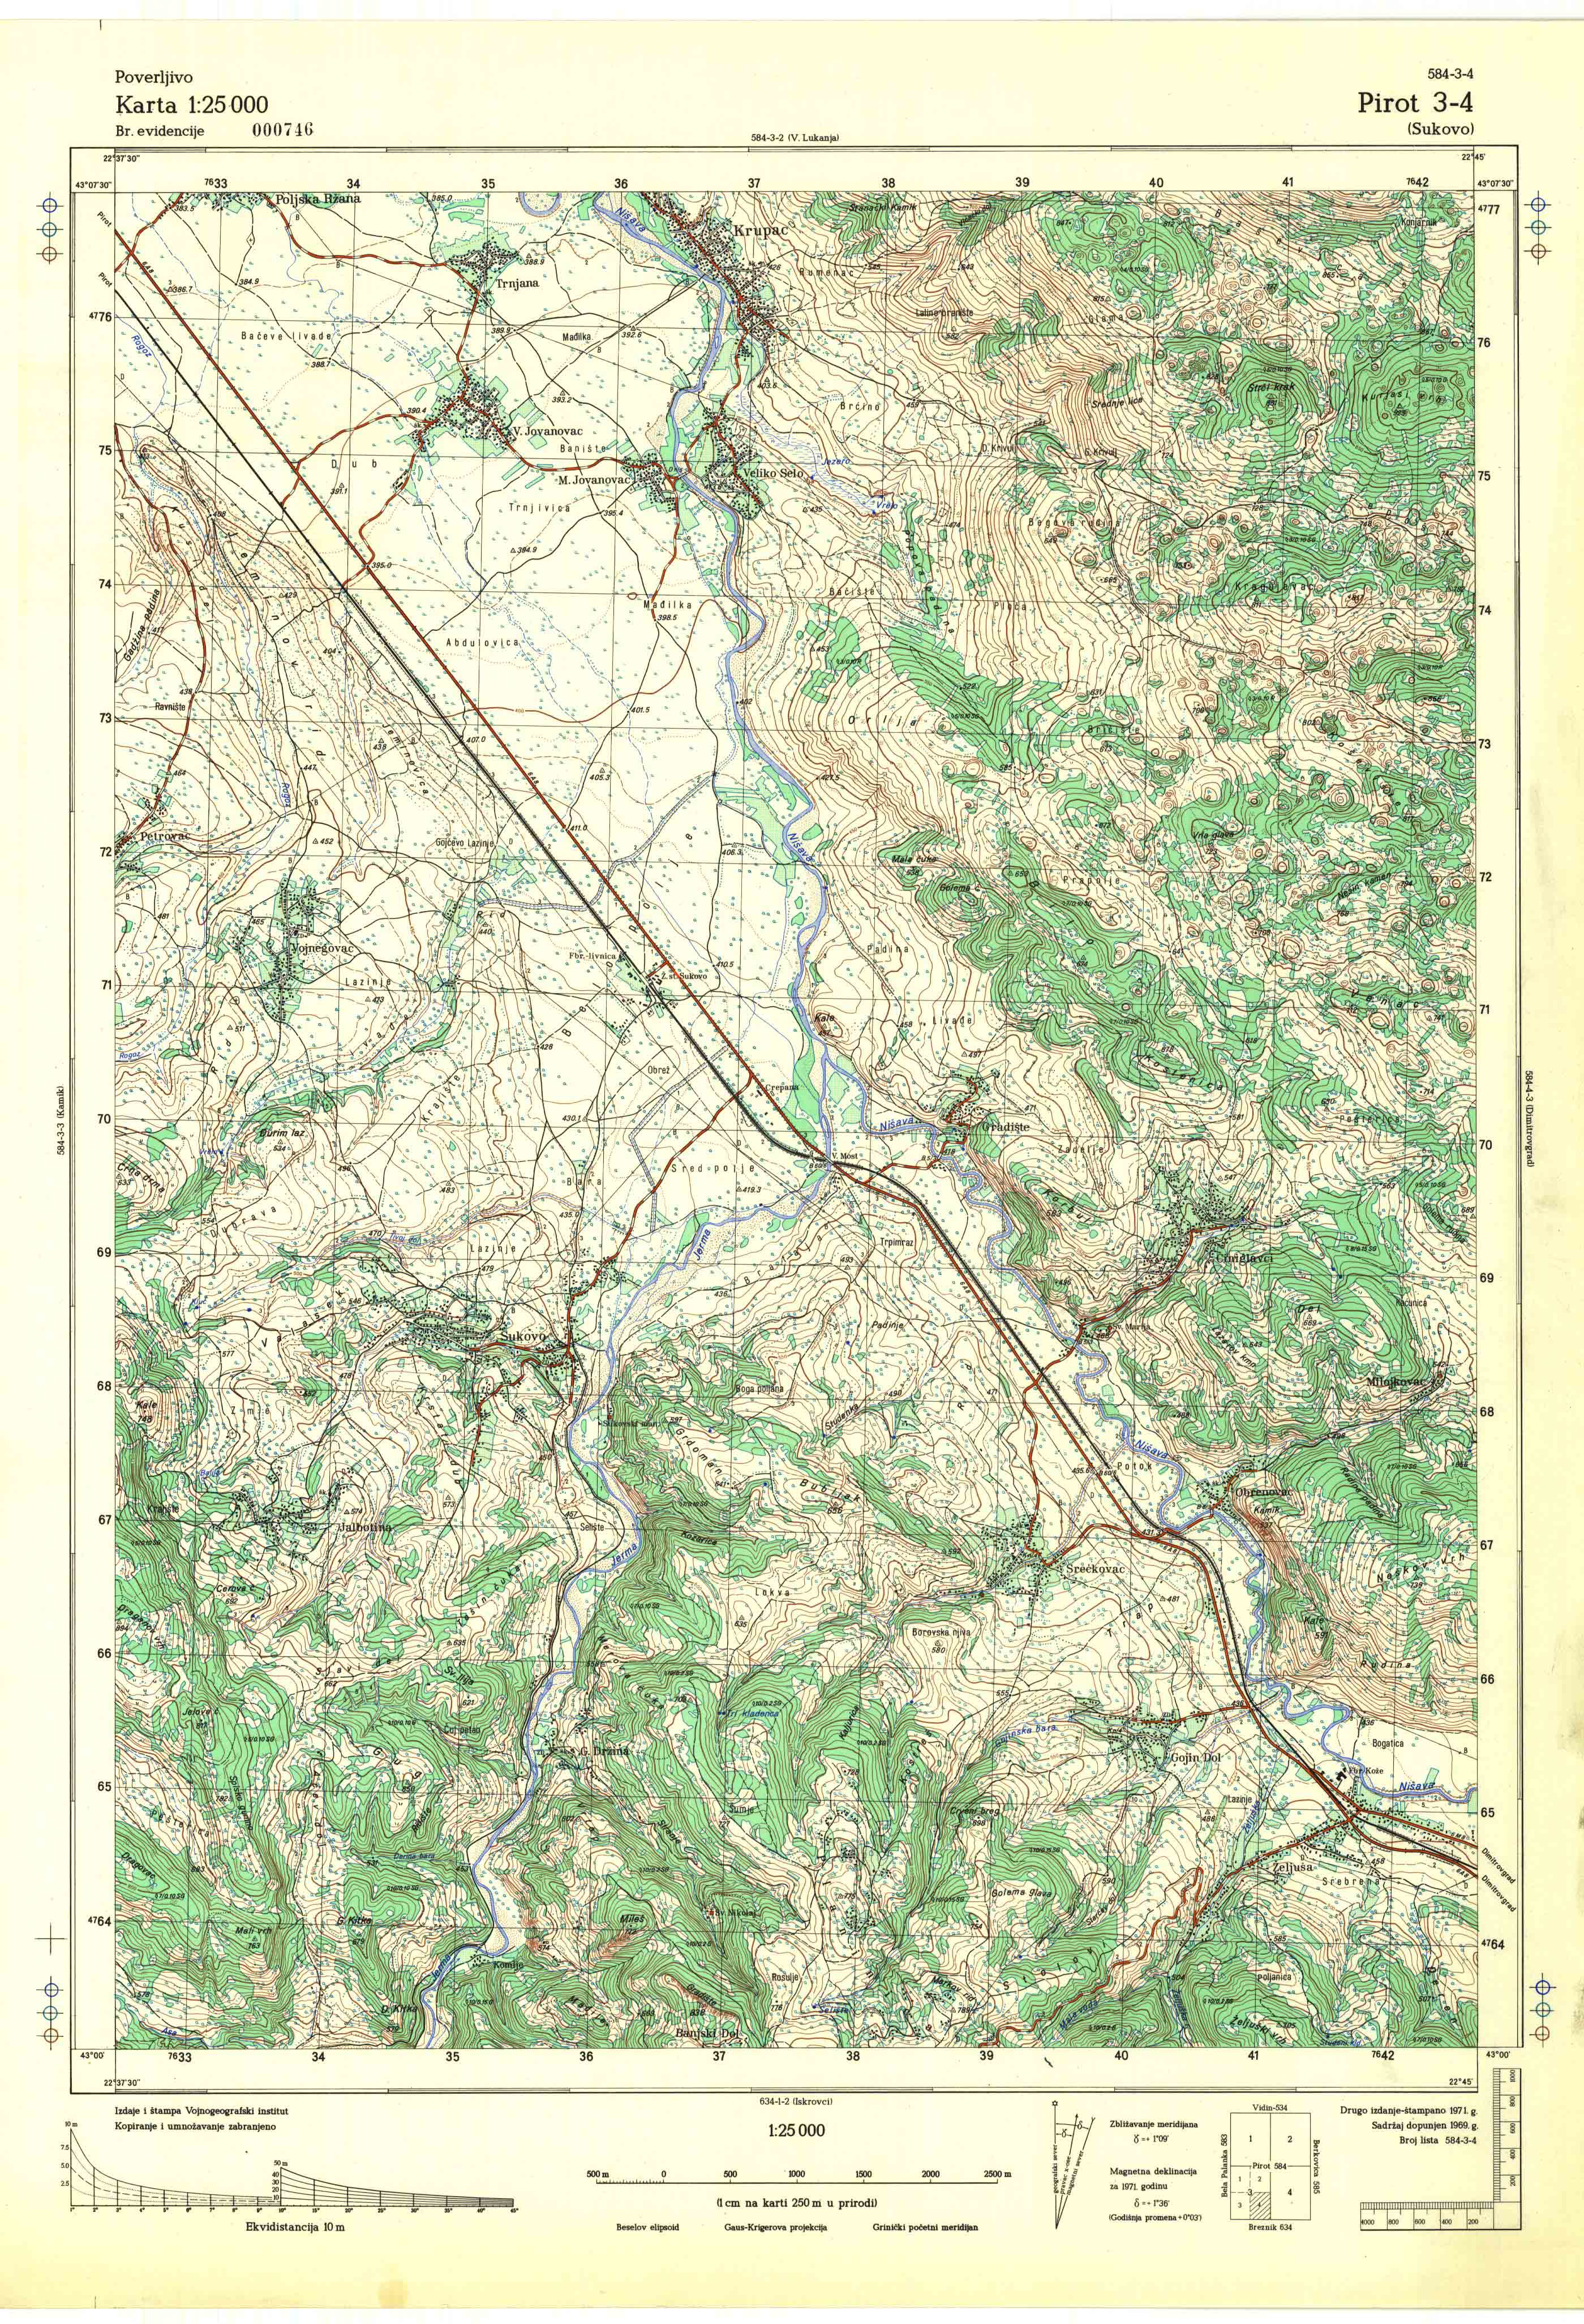  topografska karta srbije 25000 JNA  Pirot